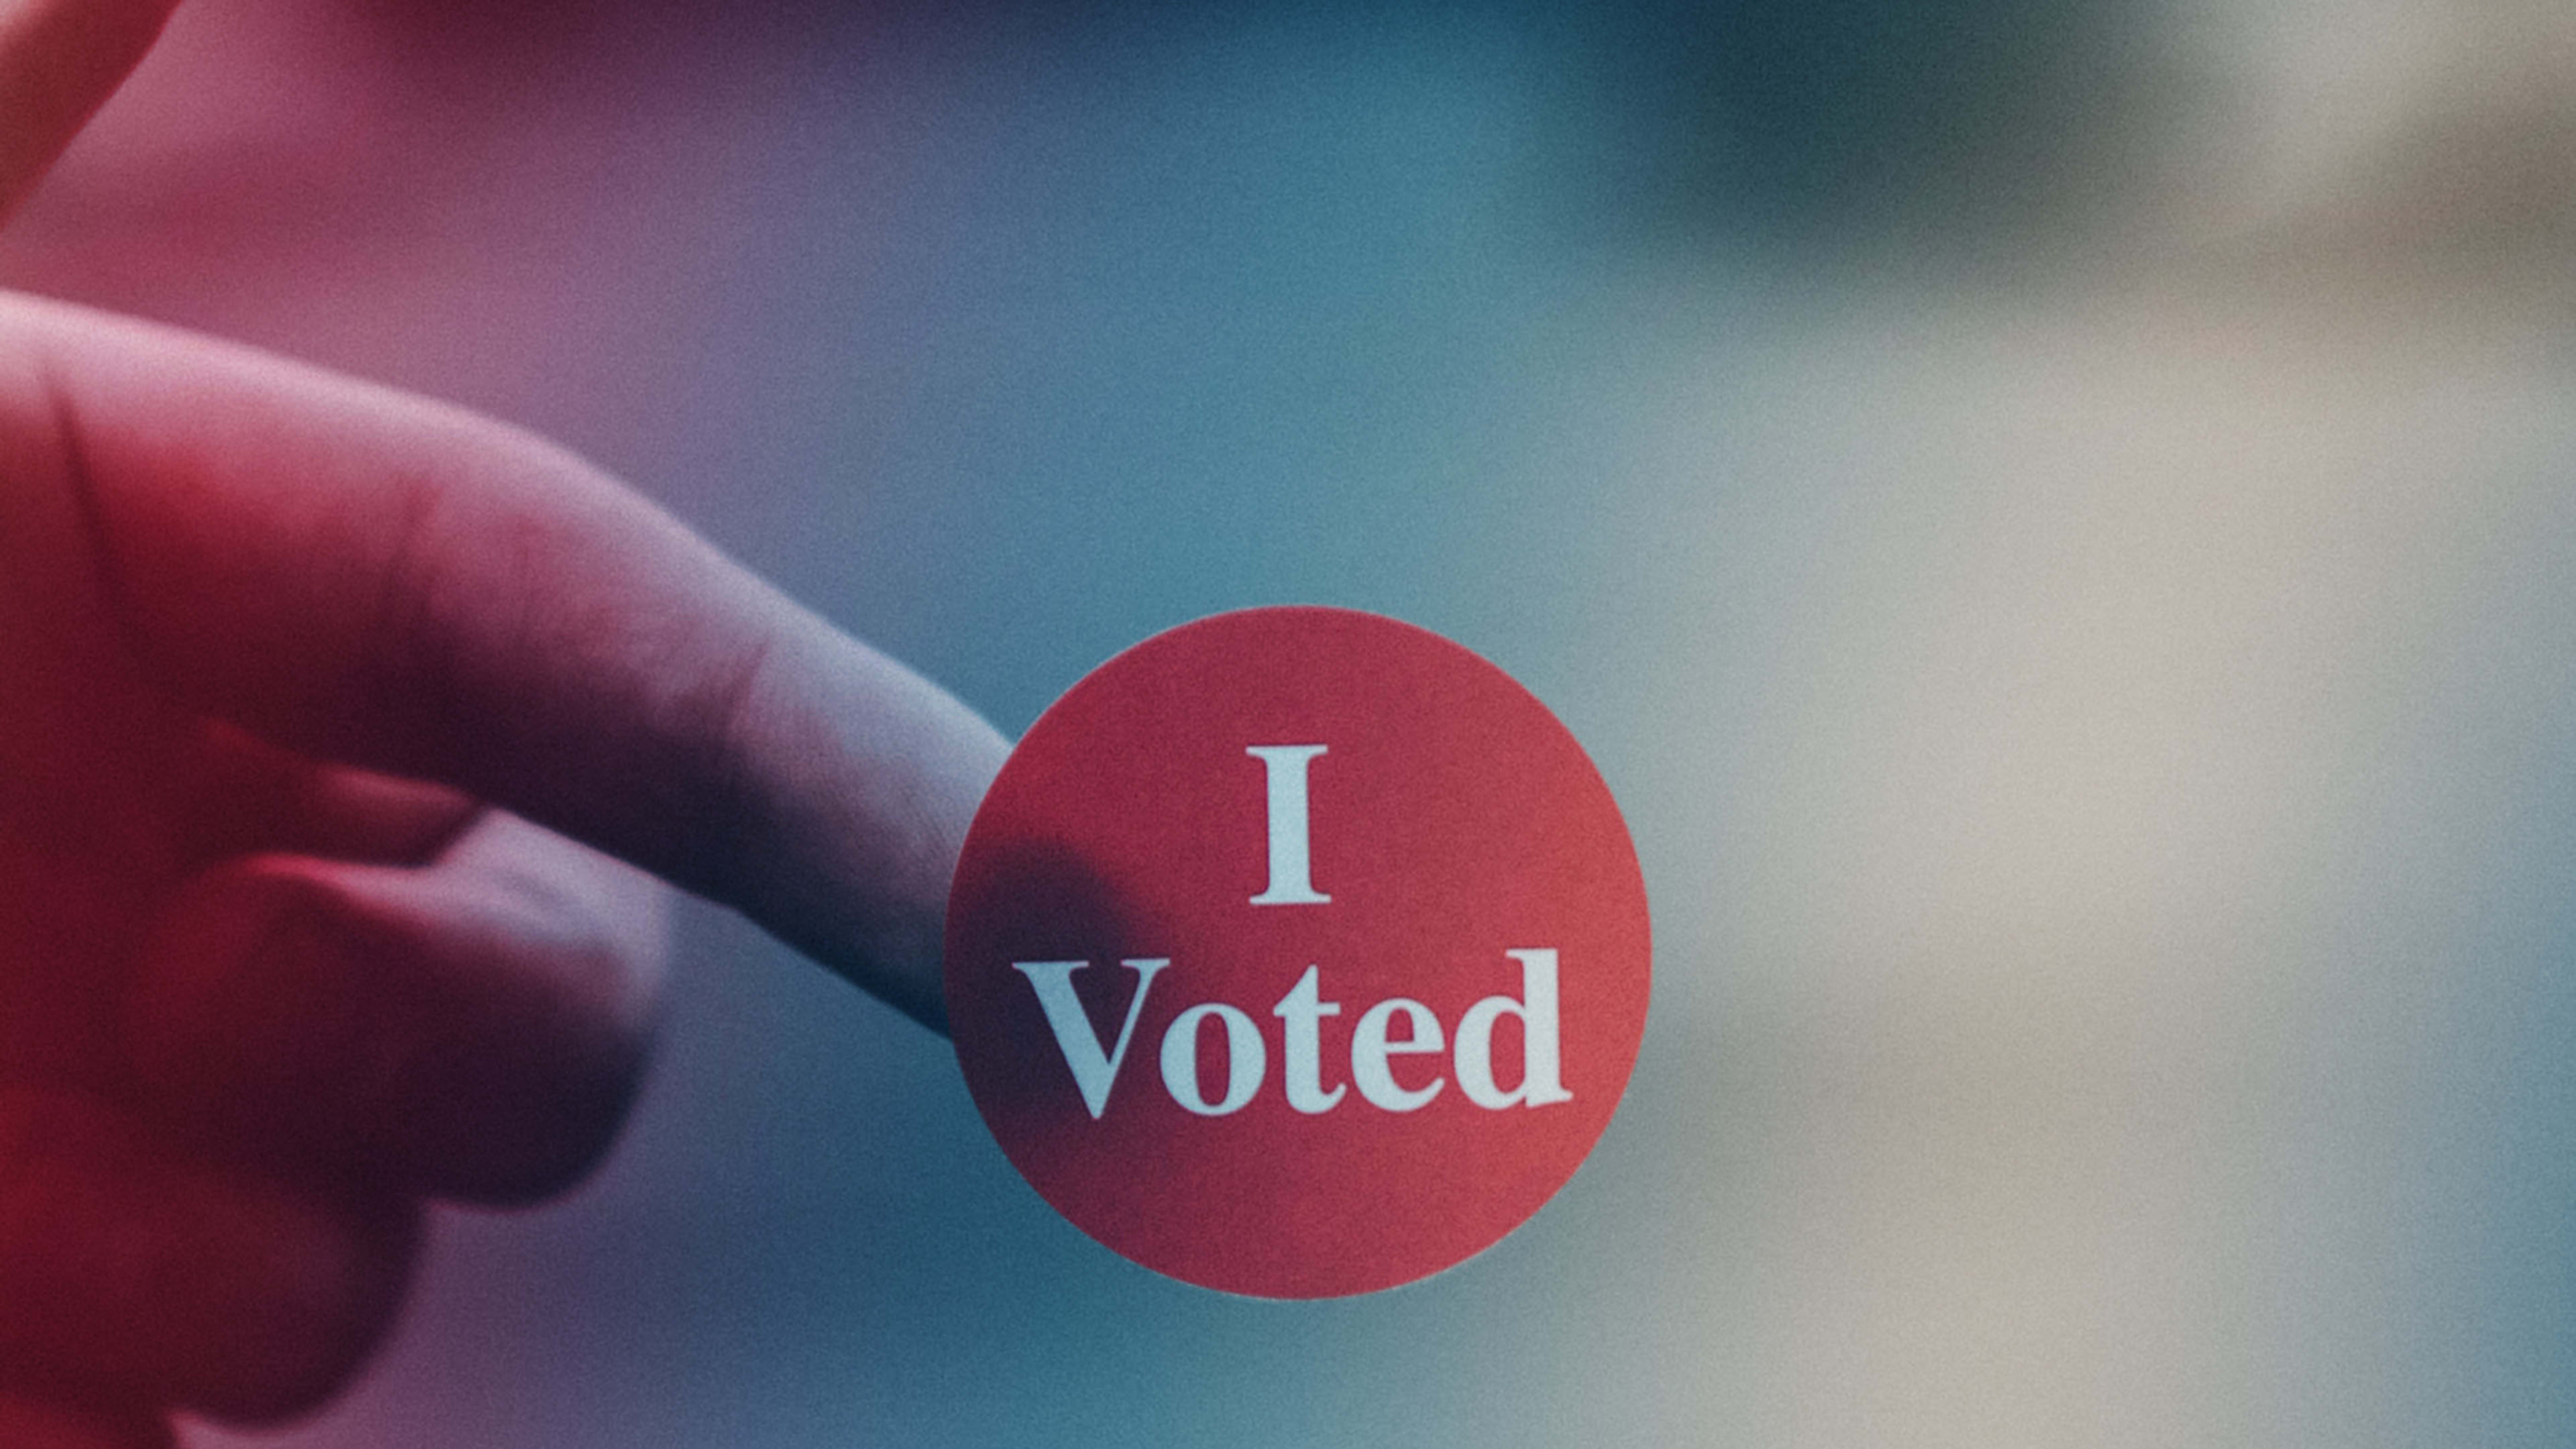 Judge allows e-voting in Georgia despite hacking fears